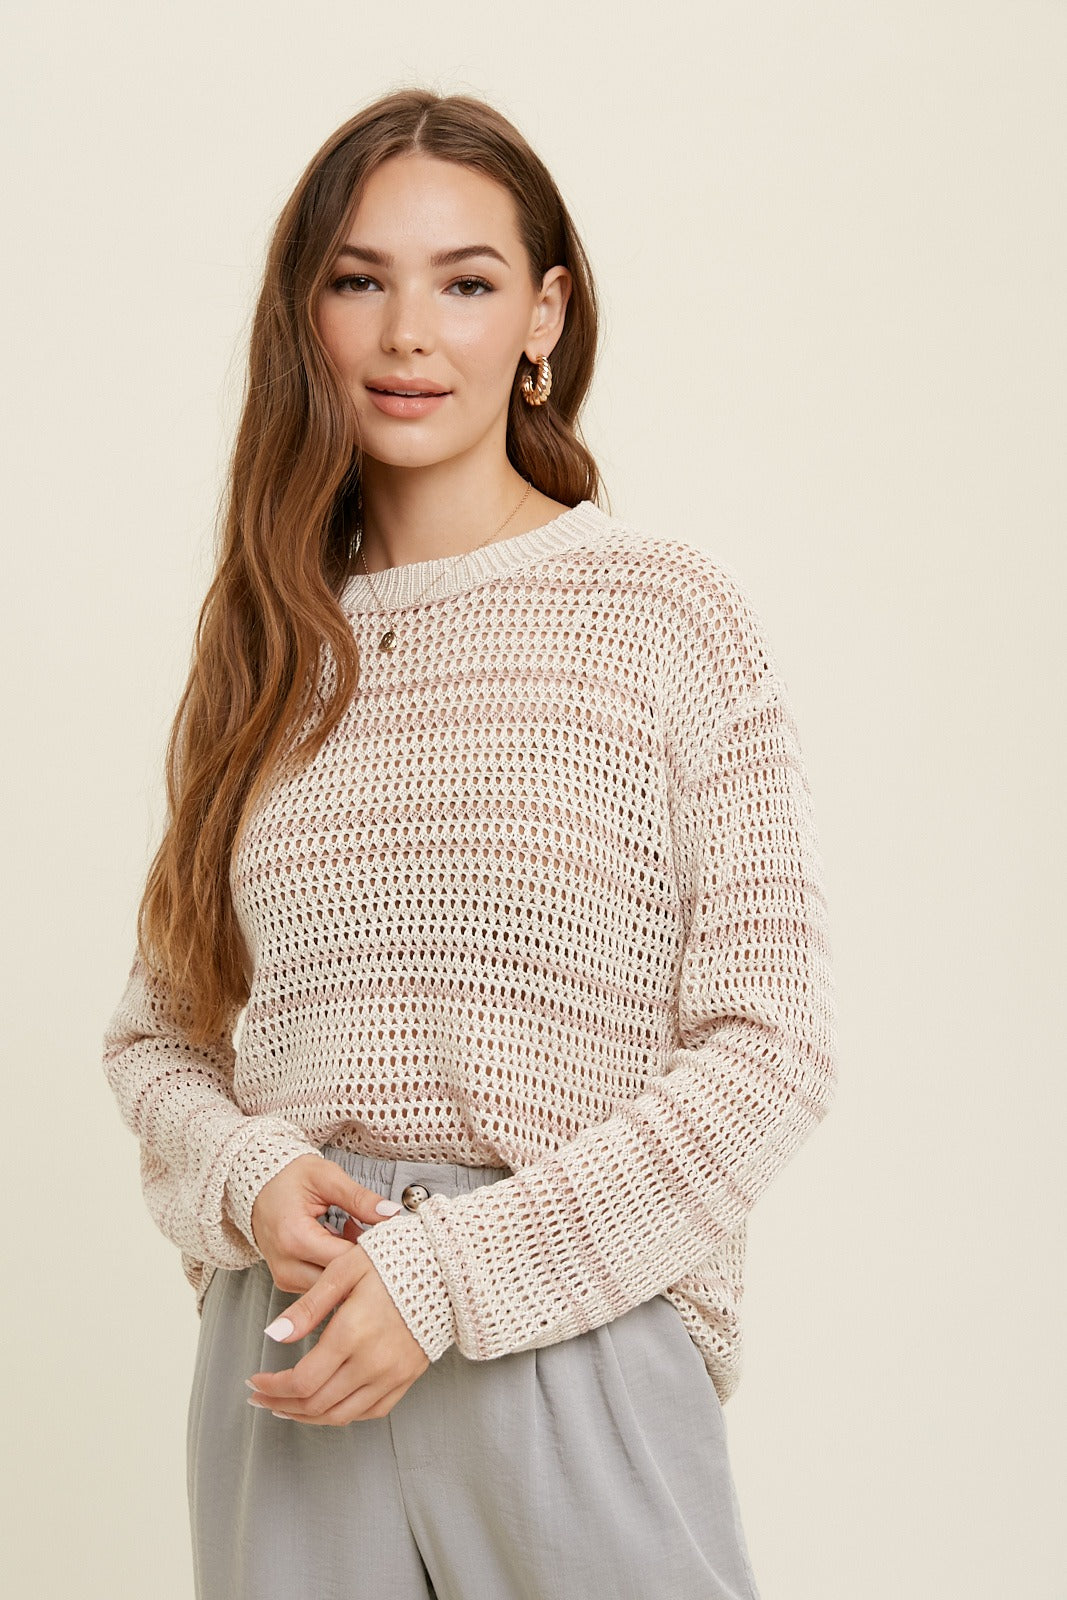 Chelsea - Crochet Sweater